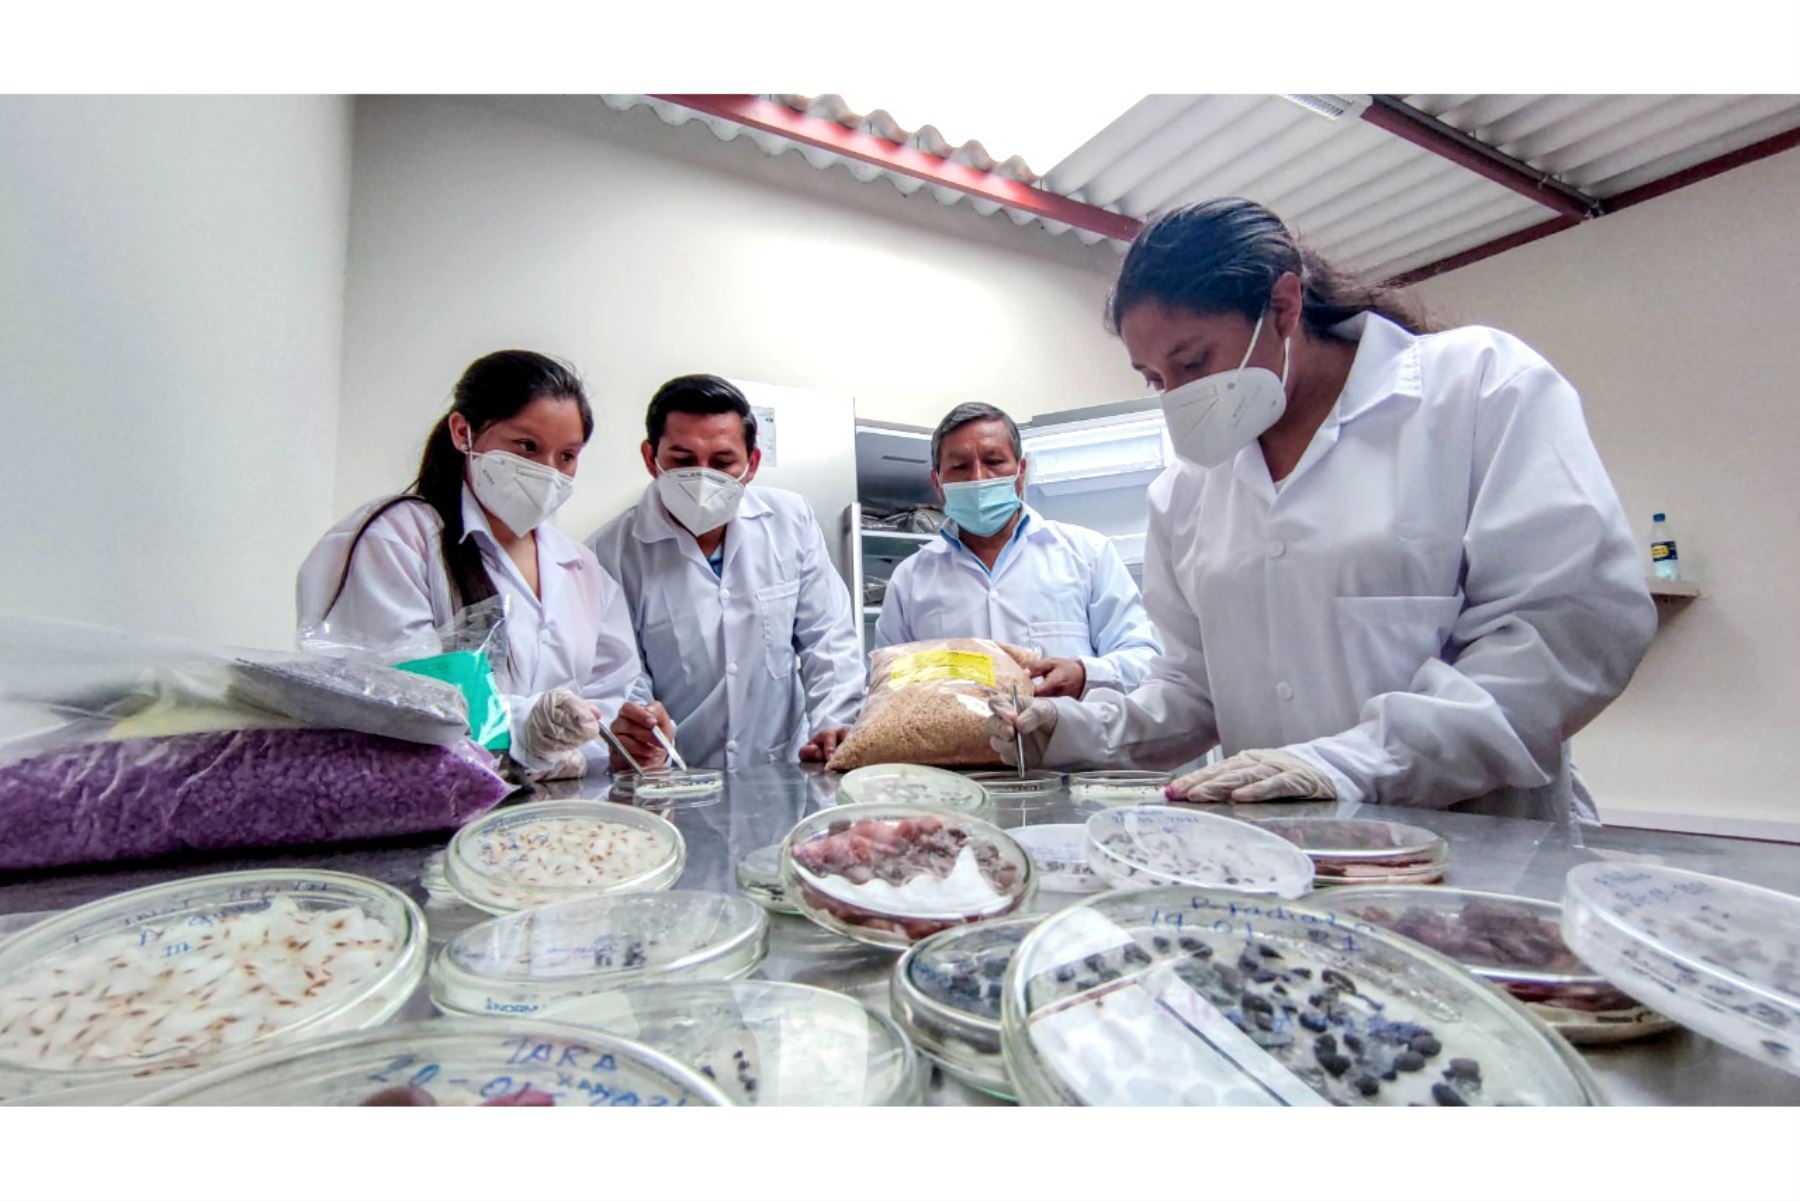 El laboratorio de semillas permitirá capacitar a los estudiantes universitarios de Cajamarca y de otras ciudades del país. Foto: ANDINA/Cortesía Eduard Lozano